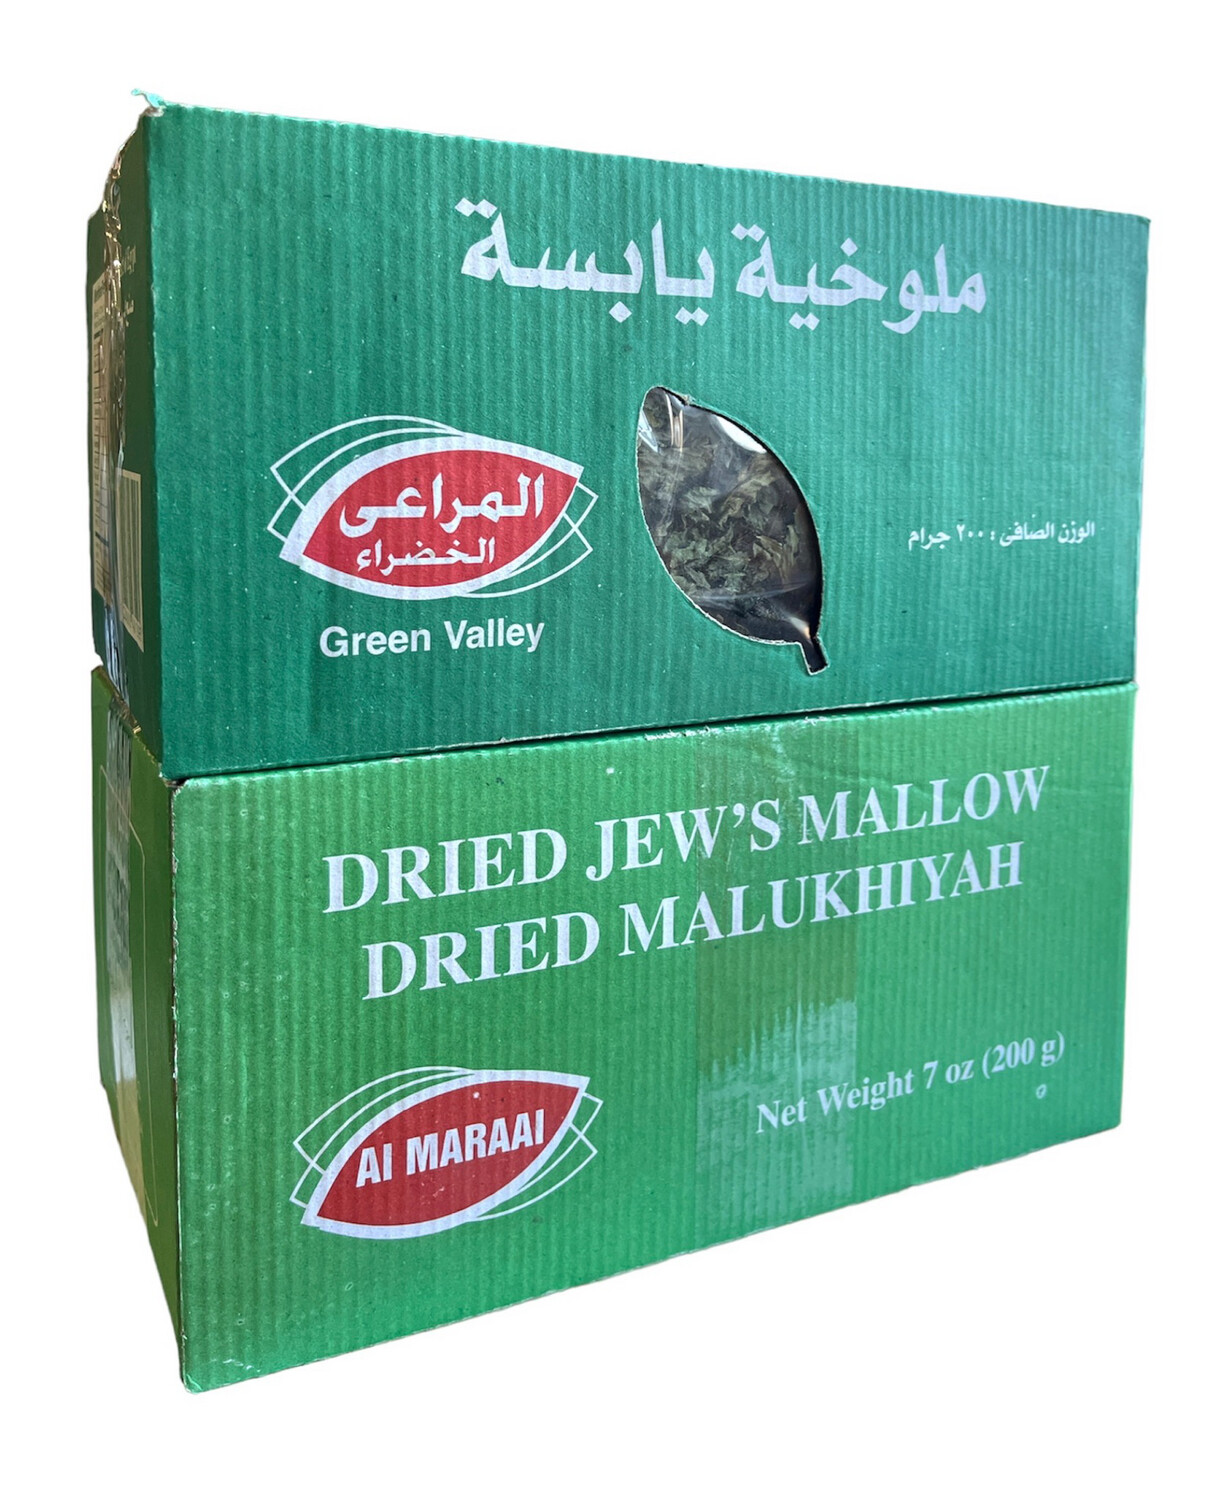 Al Maraai Dried Malukhiyah 12x200g